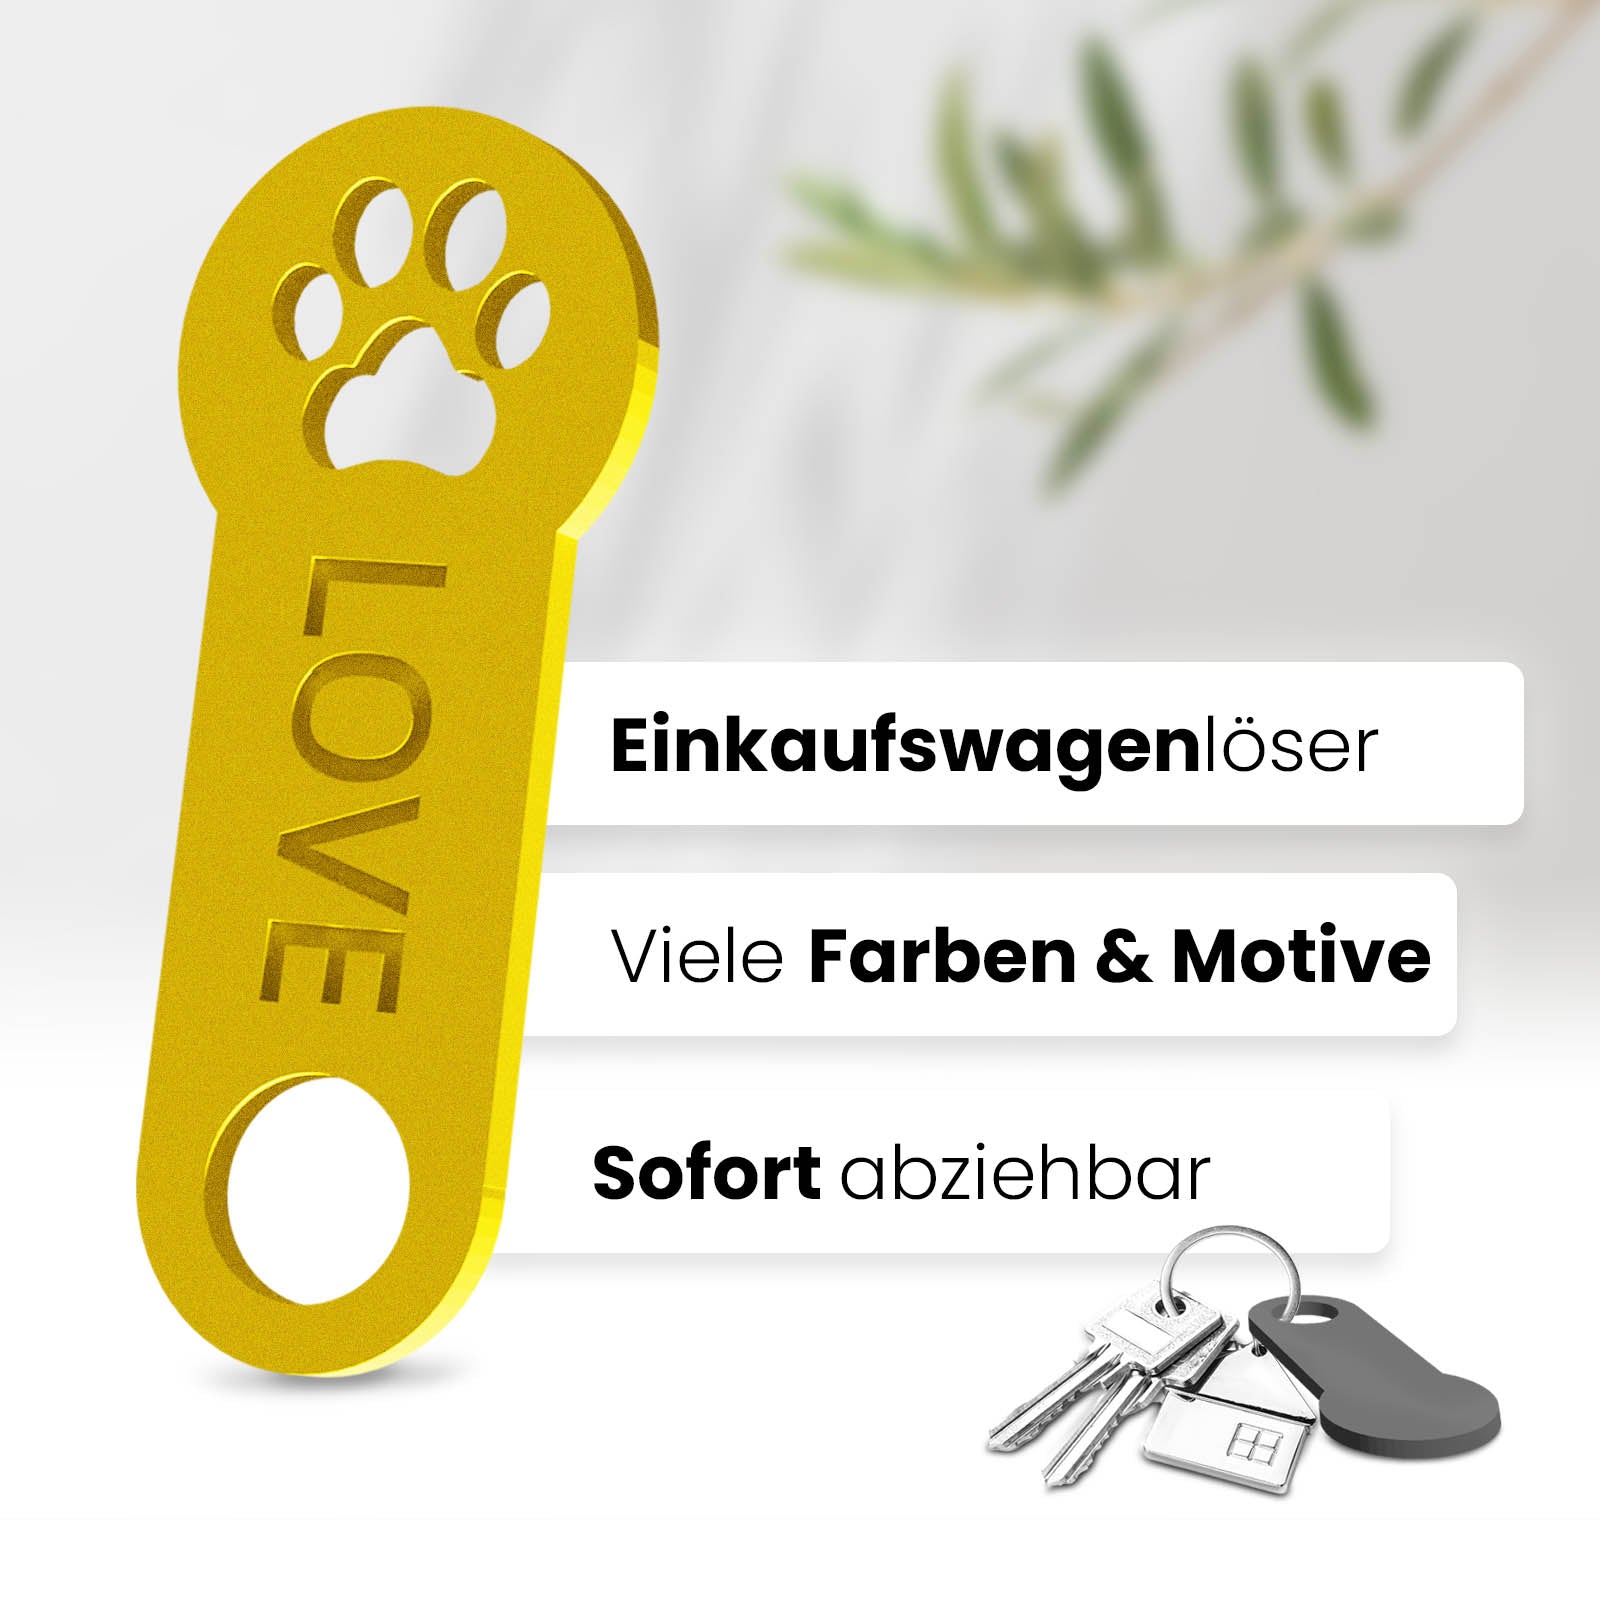 Pfoten Schlüsselanhänger – ein Accessoire mit sofortiger Einkaufswagenlöser Funktion. Hochwertiges 3D-Design für Tierfreunde.